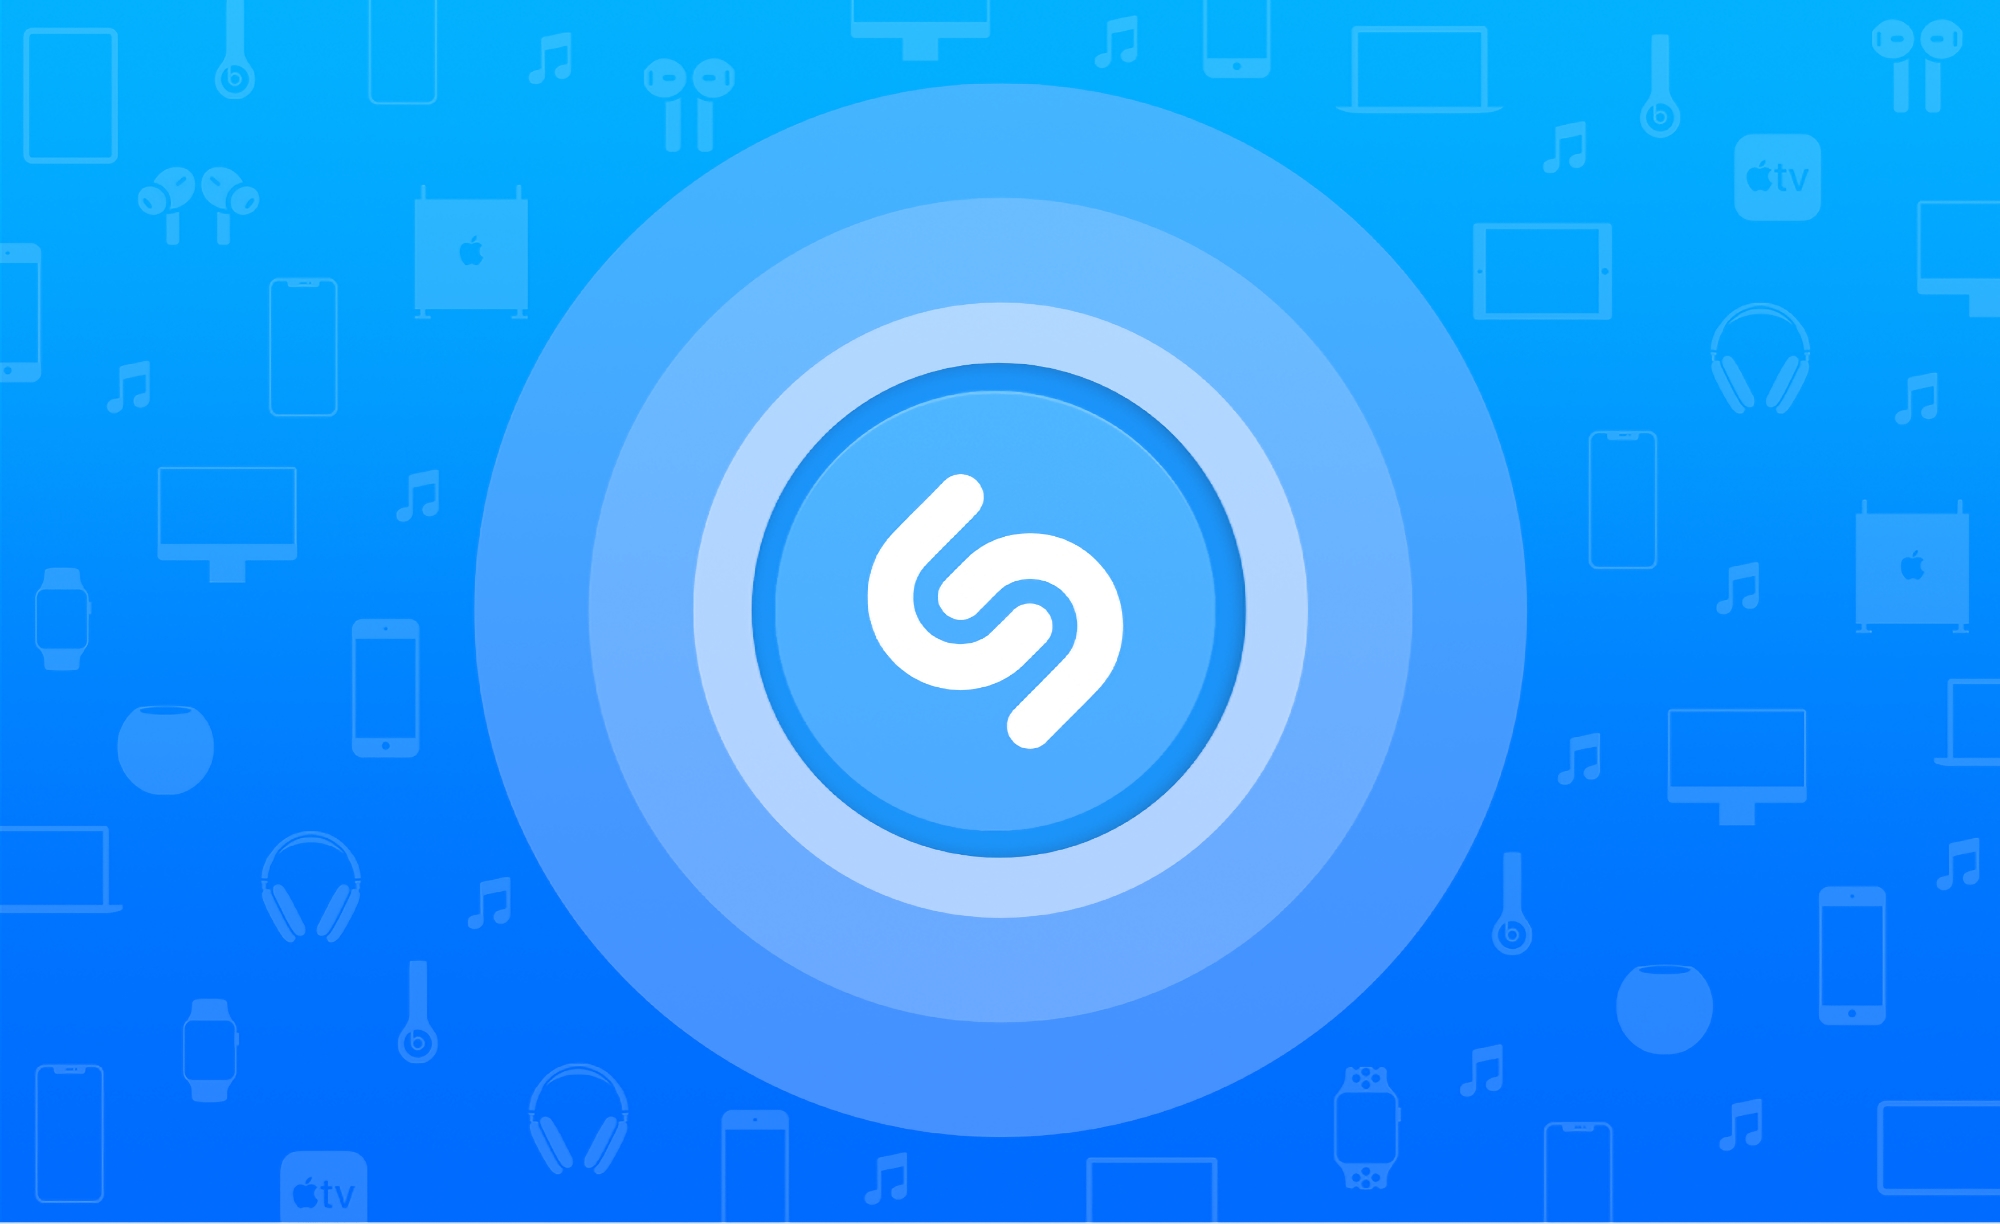 iPhone- und iPad-Nutzer können Shazam jetzt nutzen, um Songs in Apps zu identifizieren, ohne ihre Kopfhörer abzunehmen